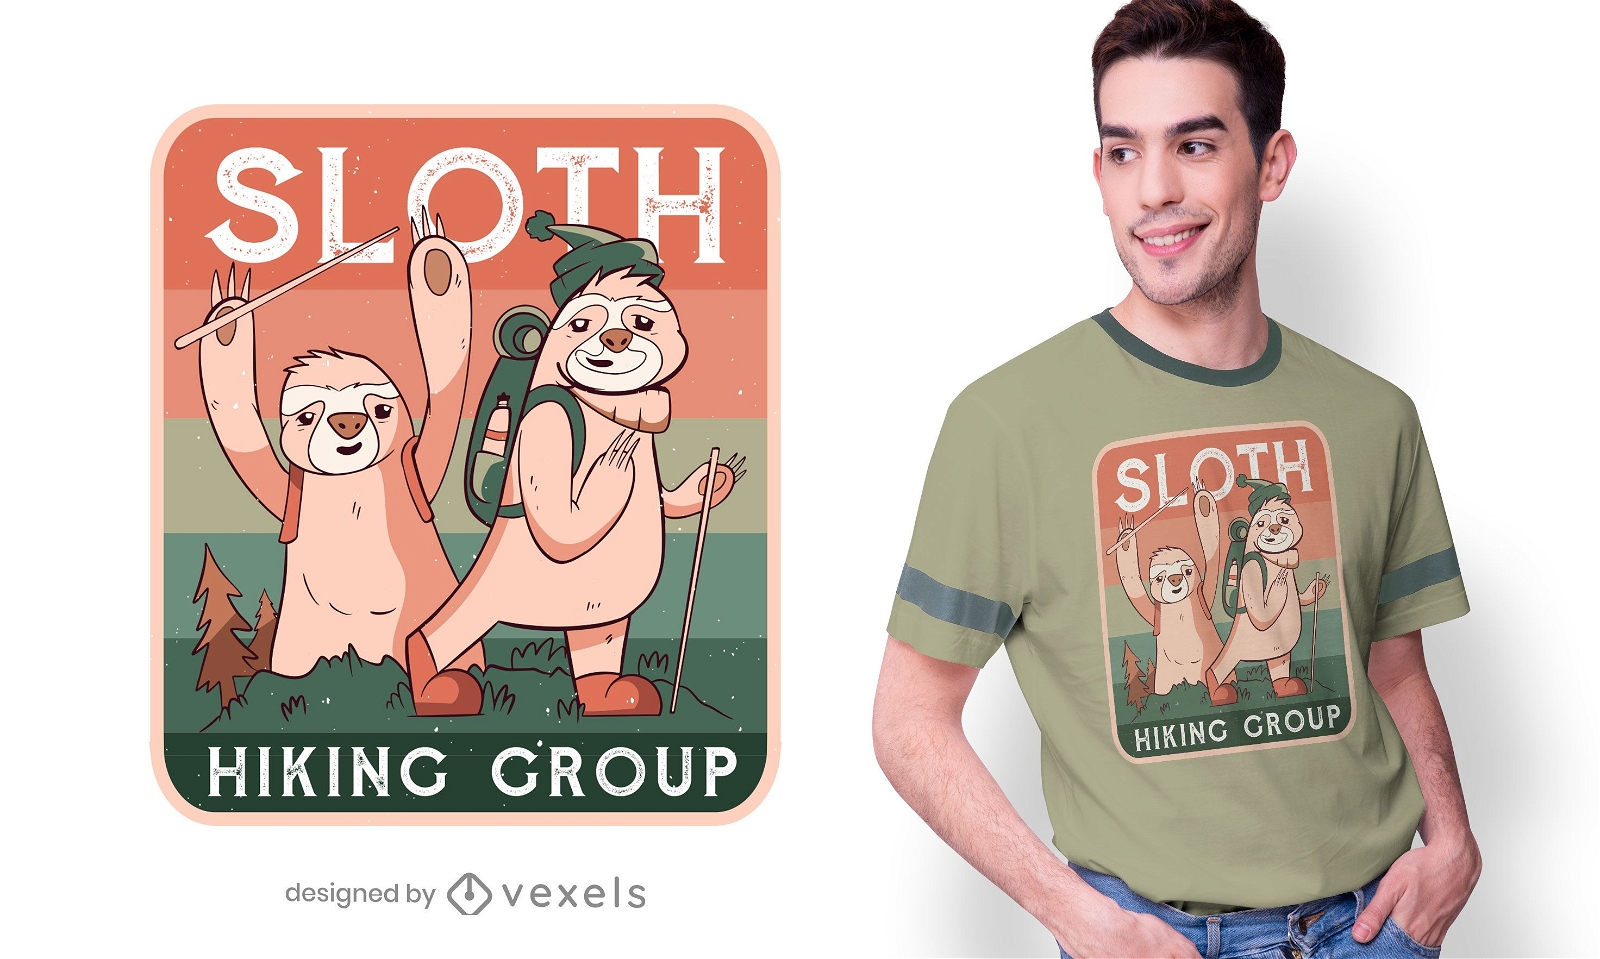 Sloth hiking club t-shirt design